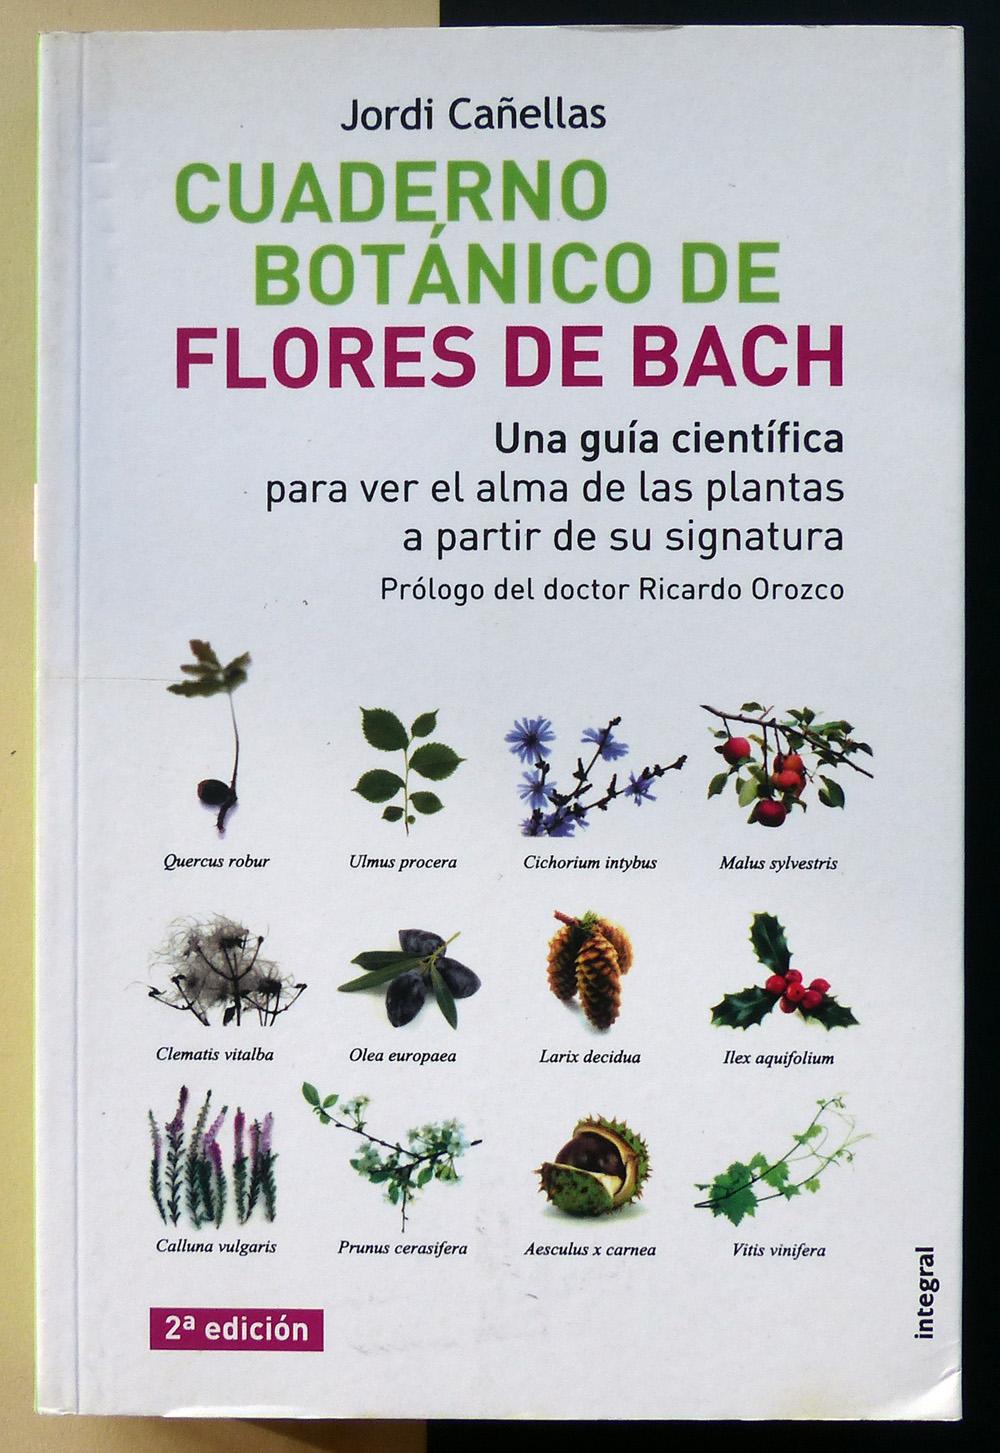 Cuaderno Botánico de Flores de Bach. - CAÑELLAS, Jordi